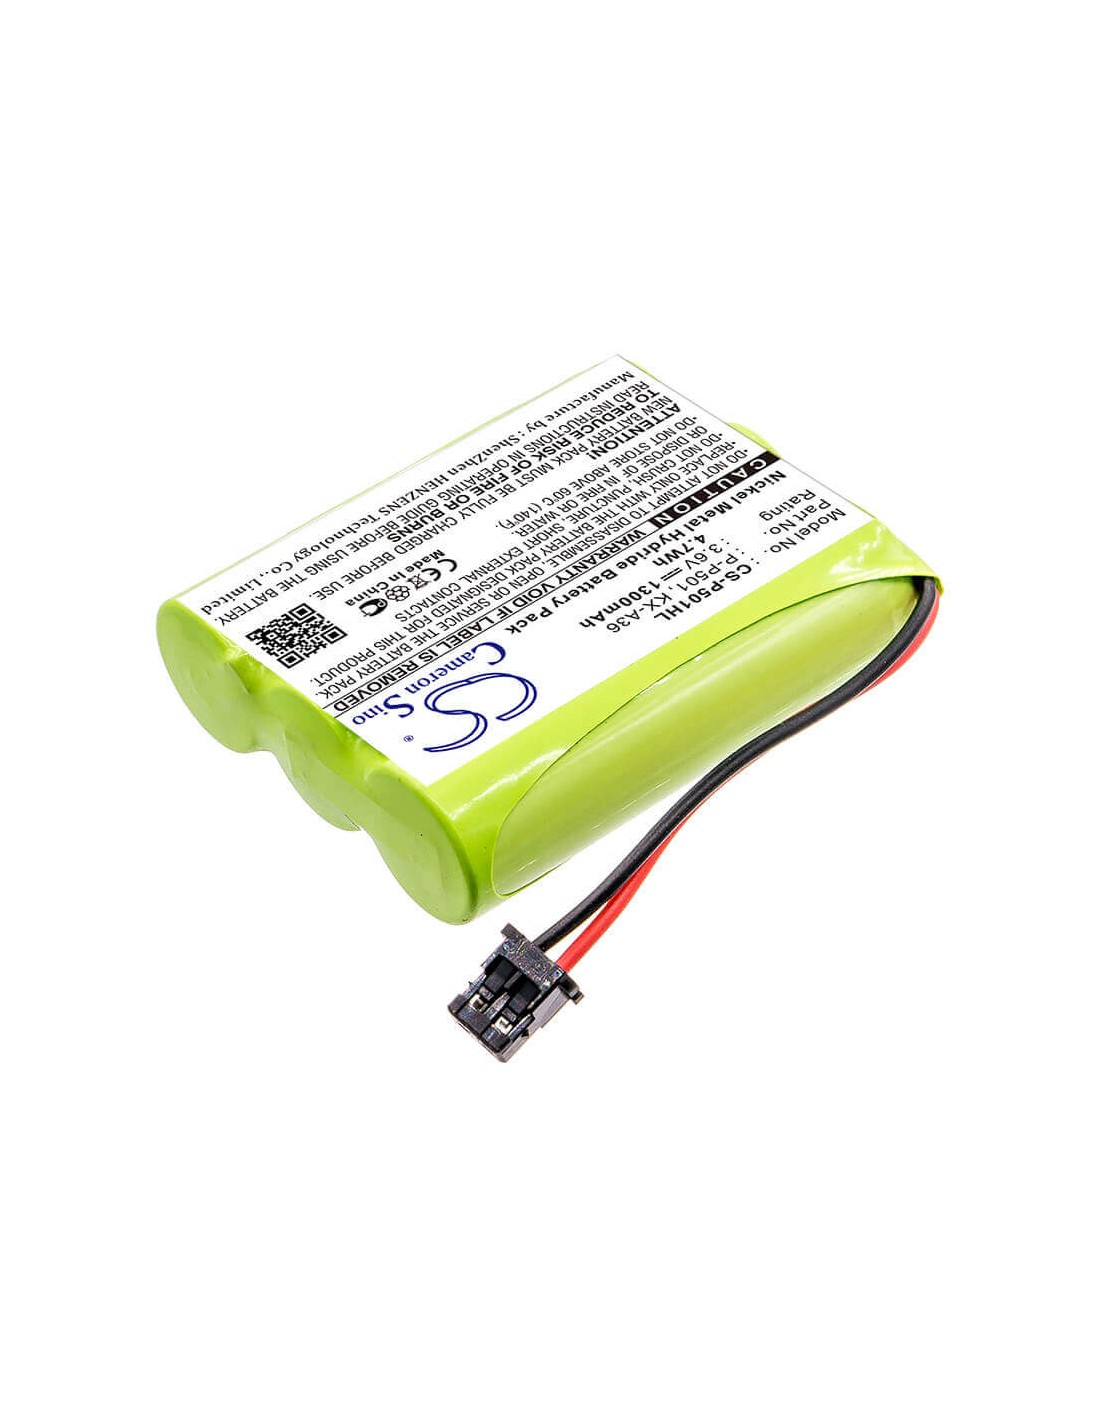 Battery for Schneider, Sst100 3.6V, 1300mAh - 4.68Wh